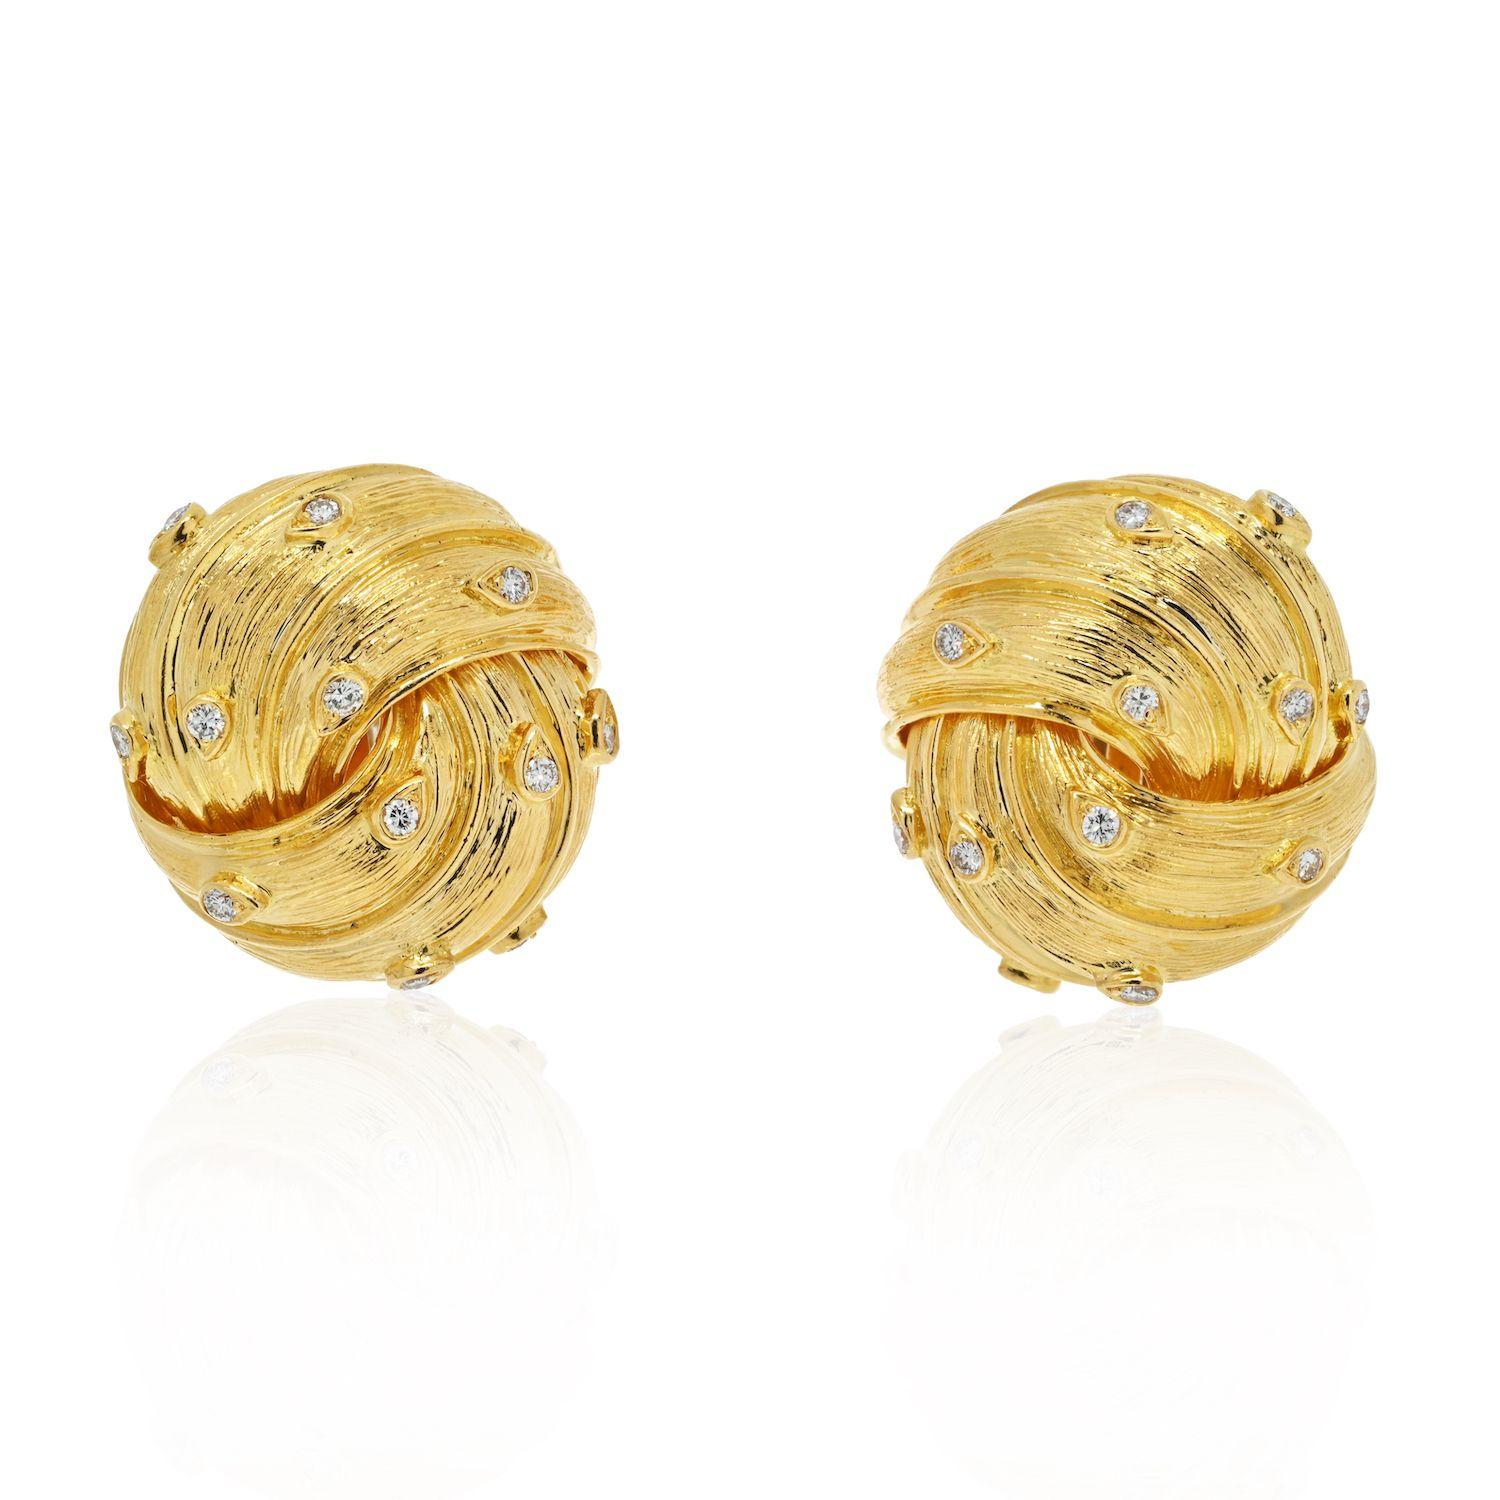 Klassische Goldohrringe sind ein zeitloses Schmuckstück, das nie aus der Mode kommt. Wenn Sie ein Paar goldene Ohrringe suchen, probieren Sie dieses fabelhafte Paar aus 18 Karat Gelbgold von David Webb. Sie sind unglaublich vielseitig und können zu